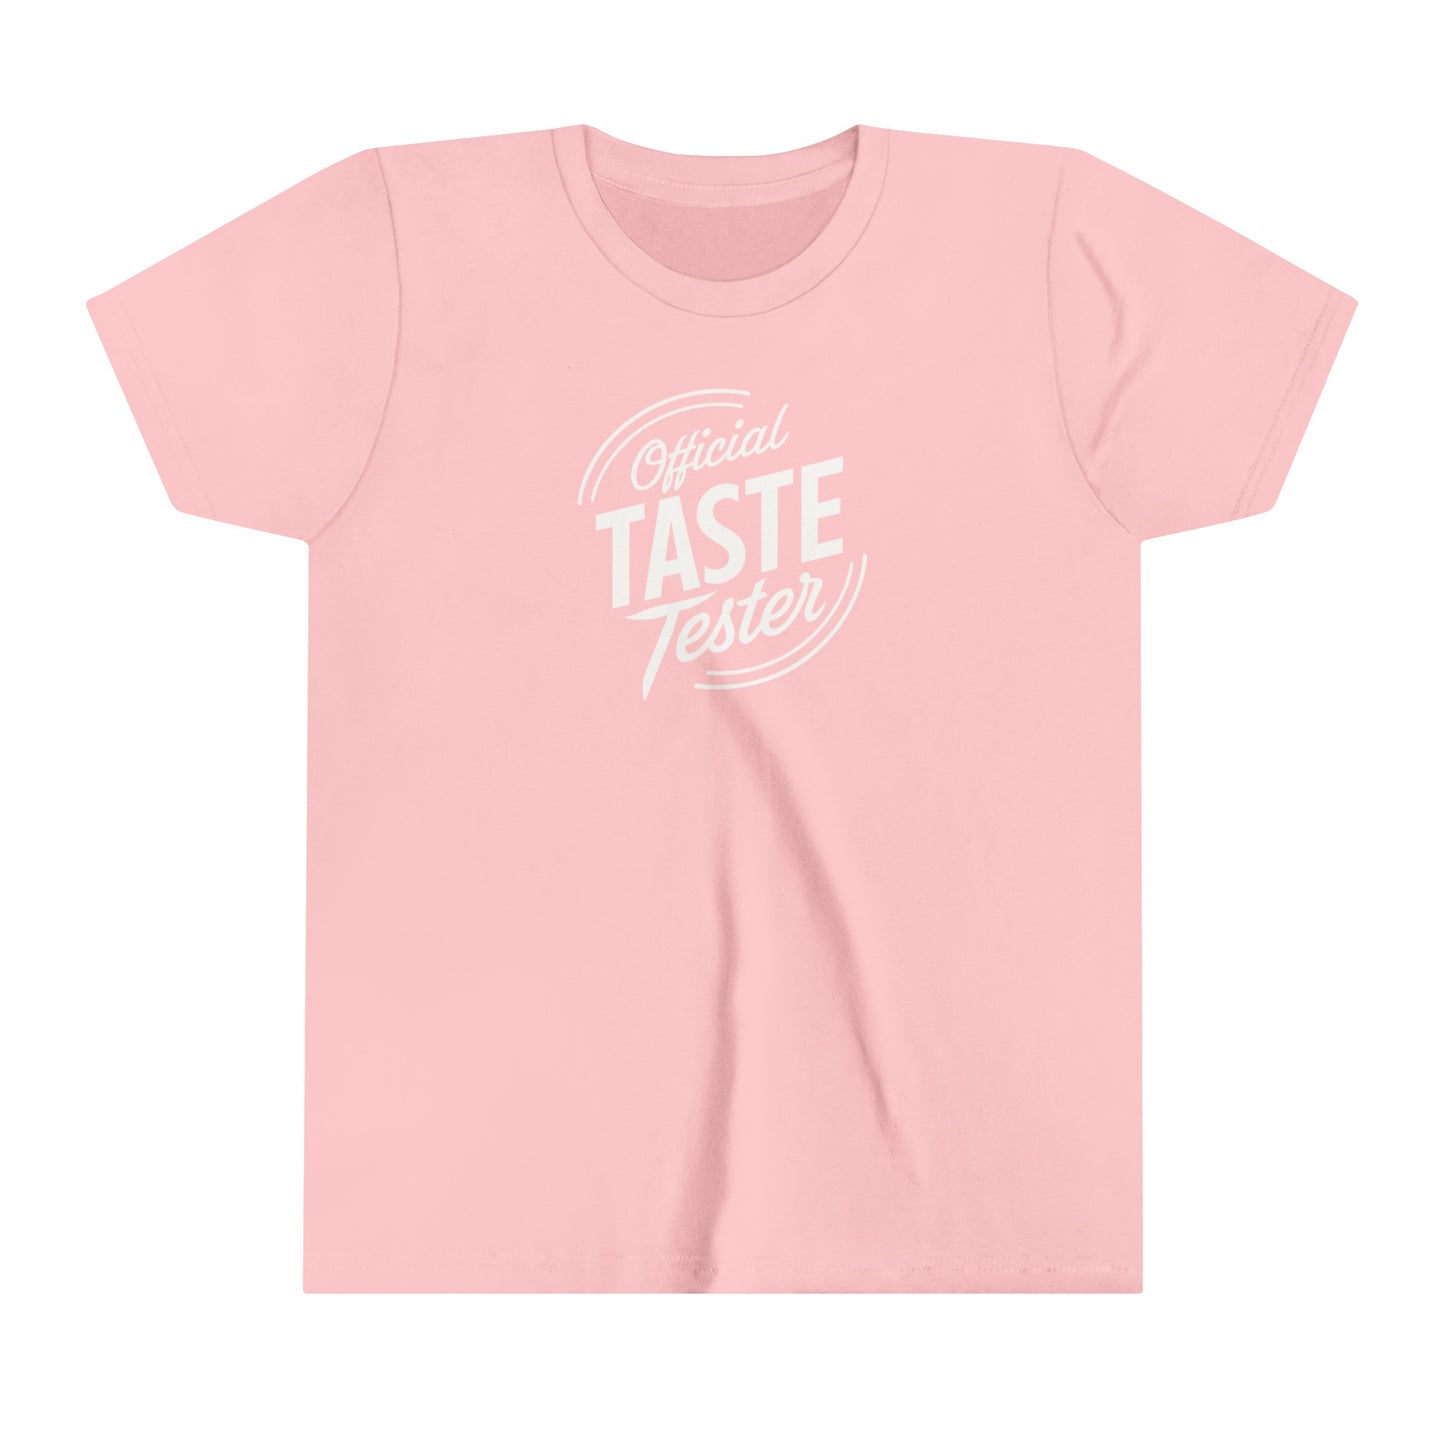 Official Taste Tester Kids' T-Shirt